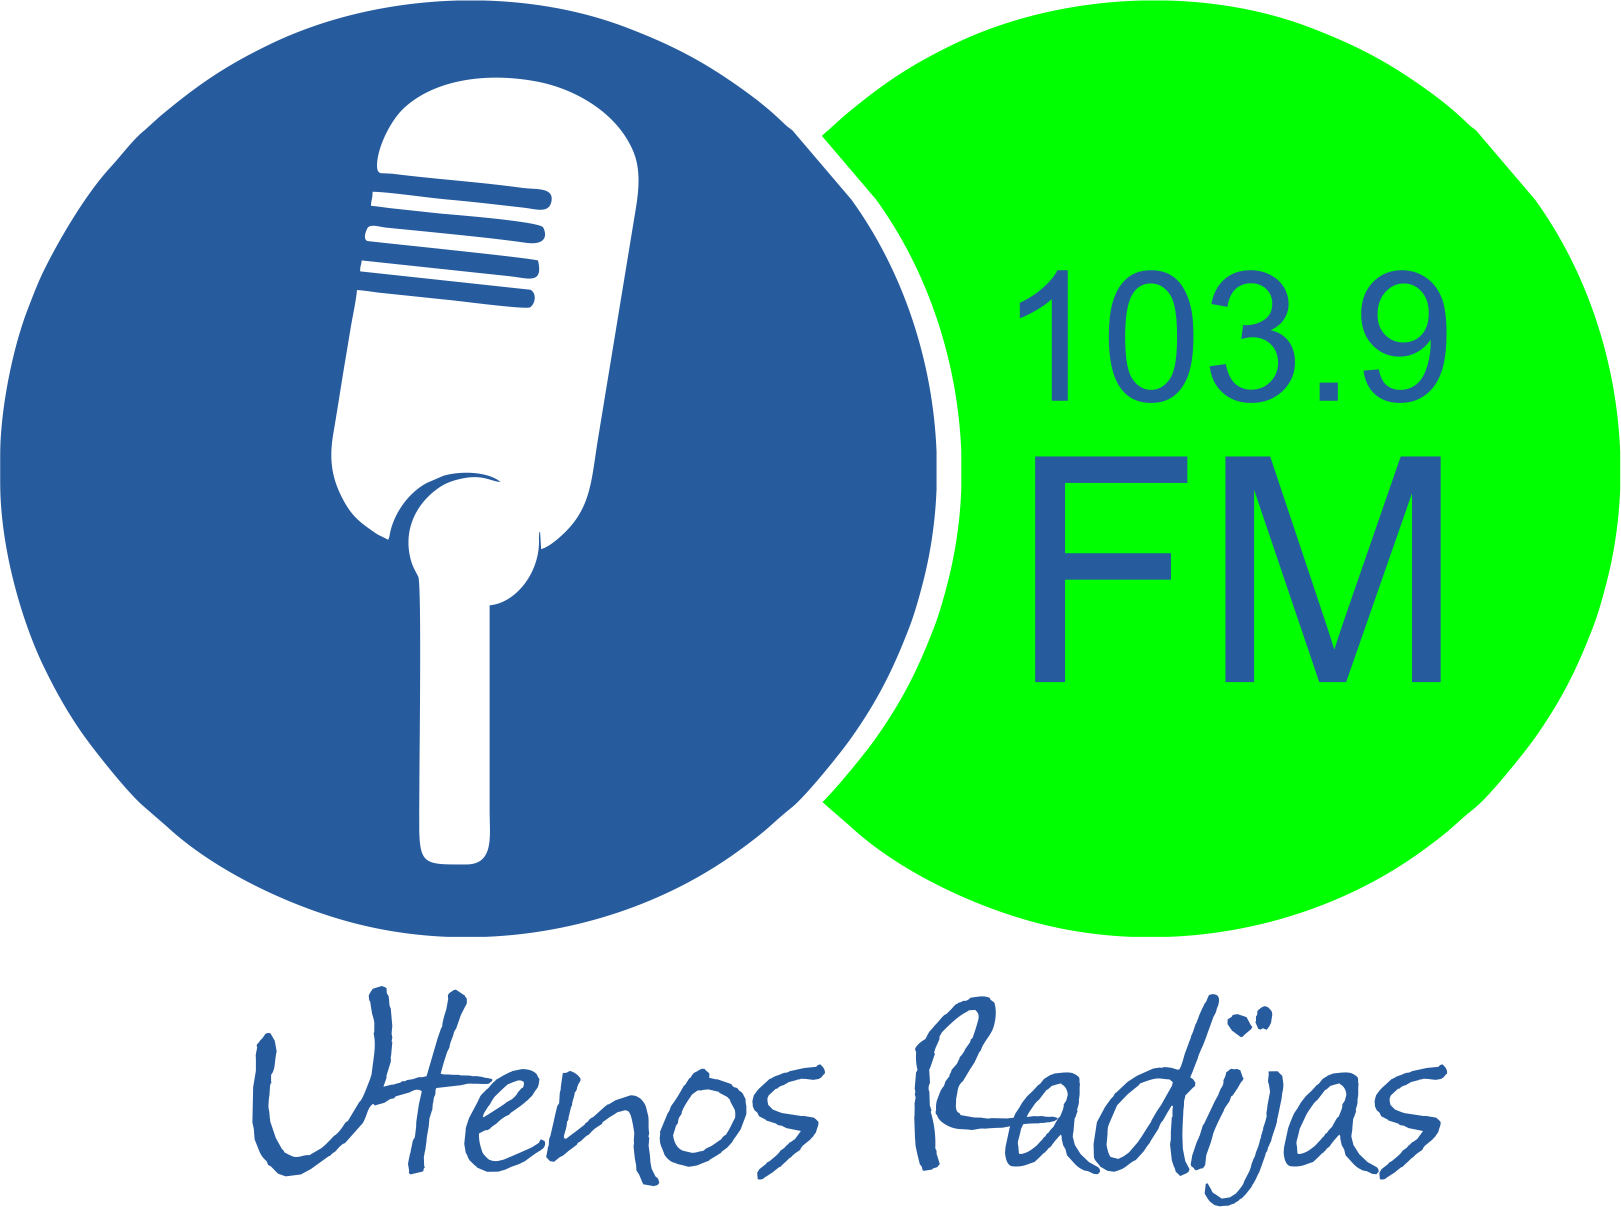 Utenos radijas logo